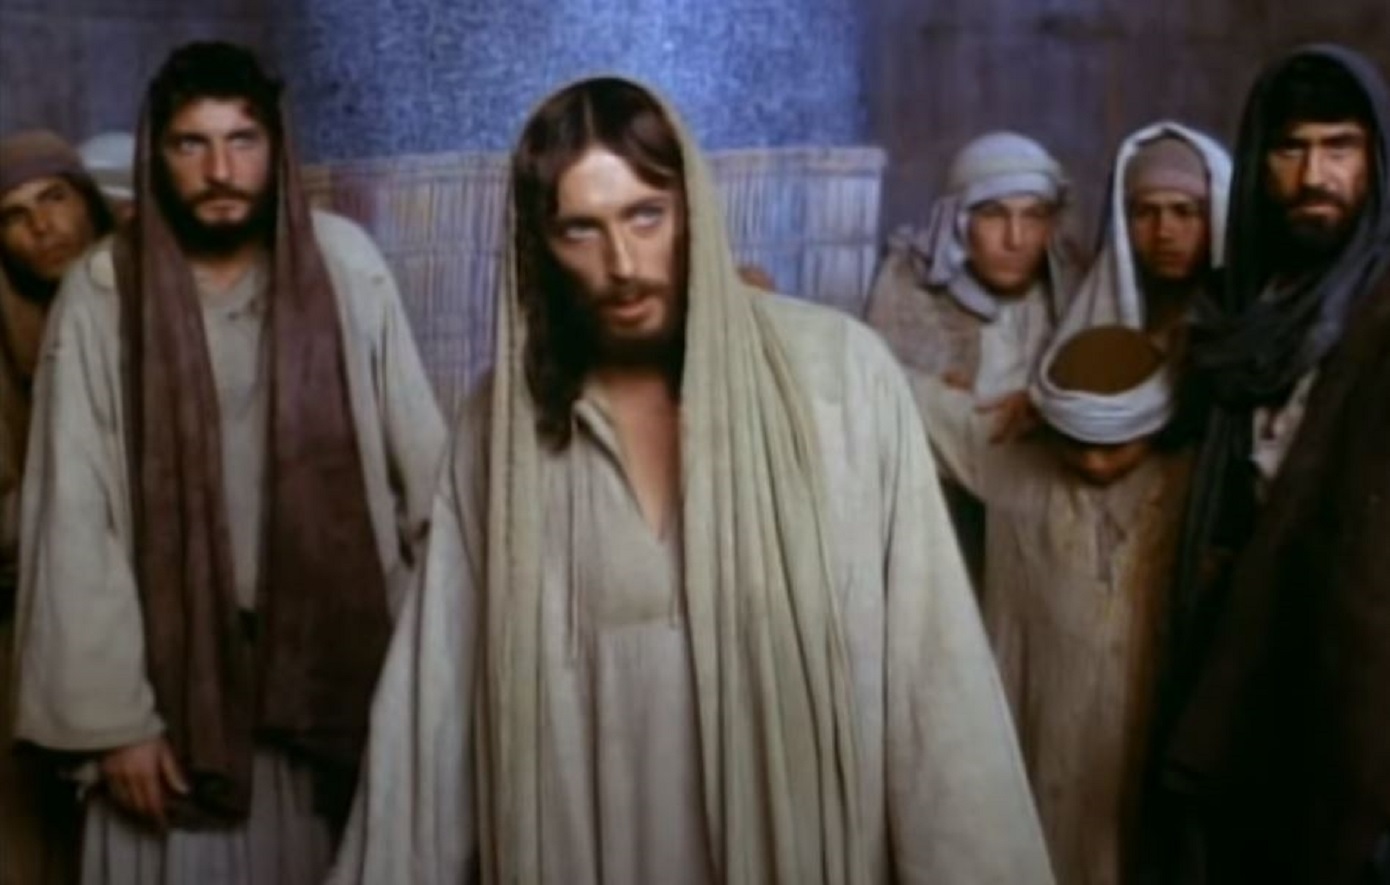 Τα λάθη, οι ανακρίβειες και οι φανταστικοί χαρακτήρες στον «Ιησού από τη Ναζαρέτ» του Φράνκο Τζεφιρέλι